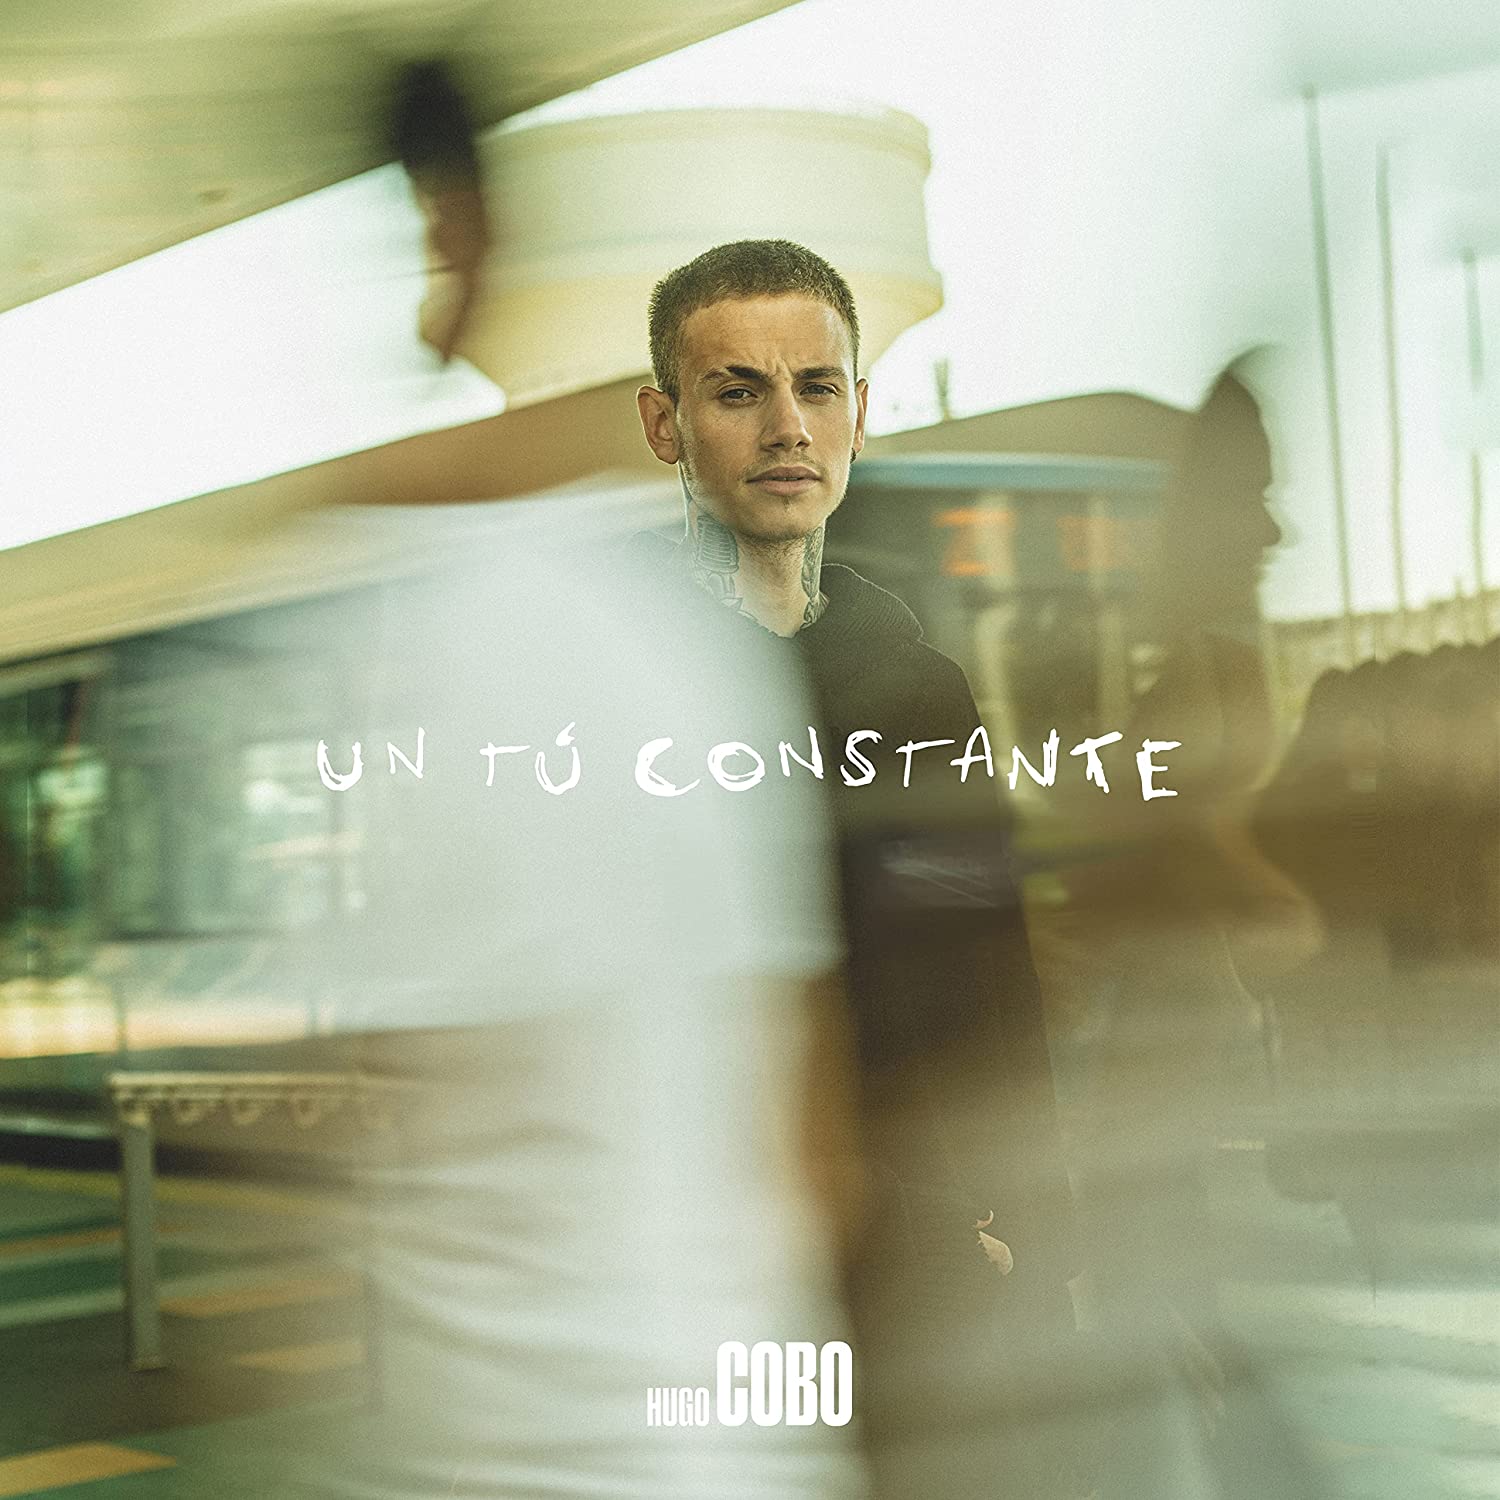 Hugo Cobo Un Tu Constante CD [Importado]